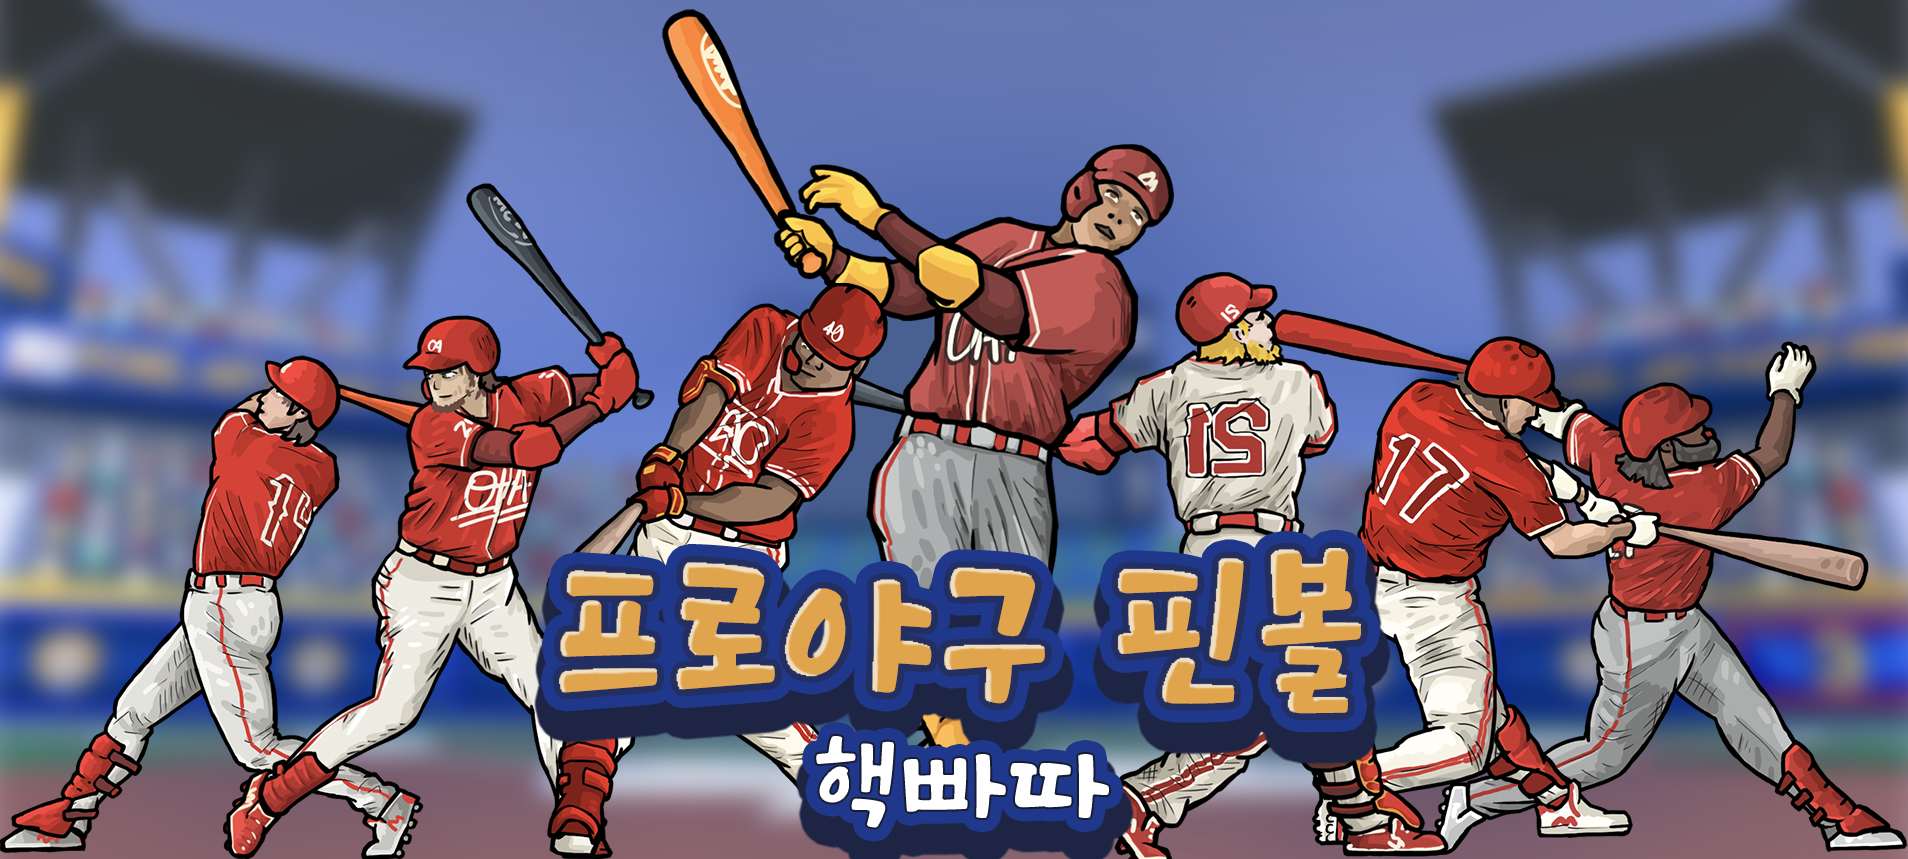 Screenshot 1 of 프로야구 핀볼 - 핵빠따 파워 슬러거 야구 게임 2.0.0